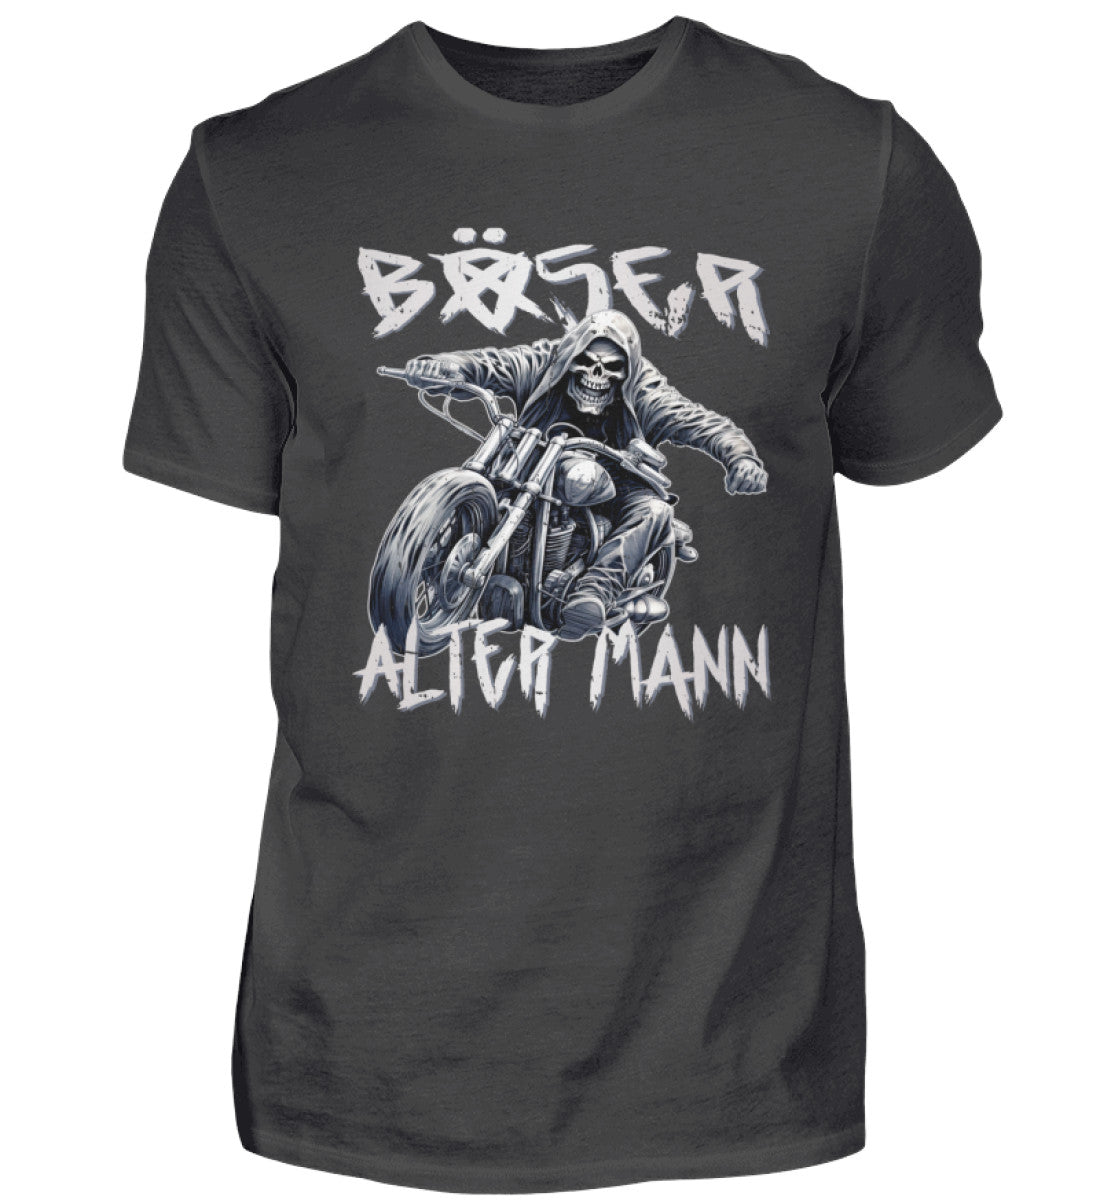 Biker T-Shirt "Böser alter Mann" für Motorradfahrer in dunkel grau. 